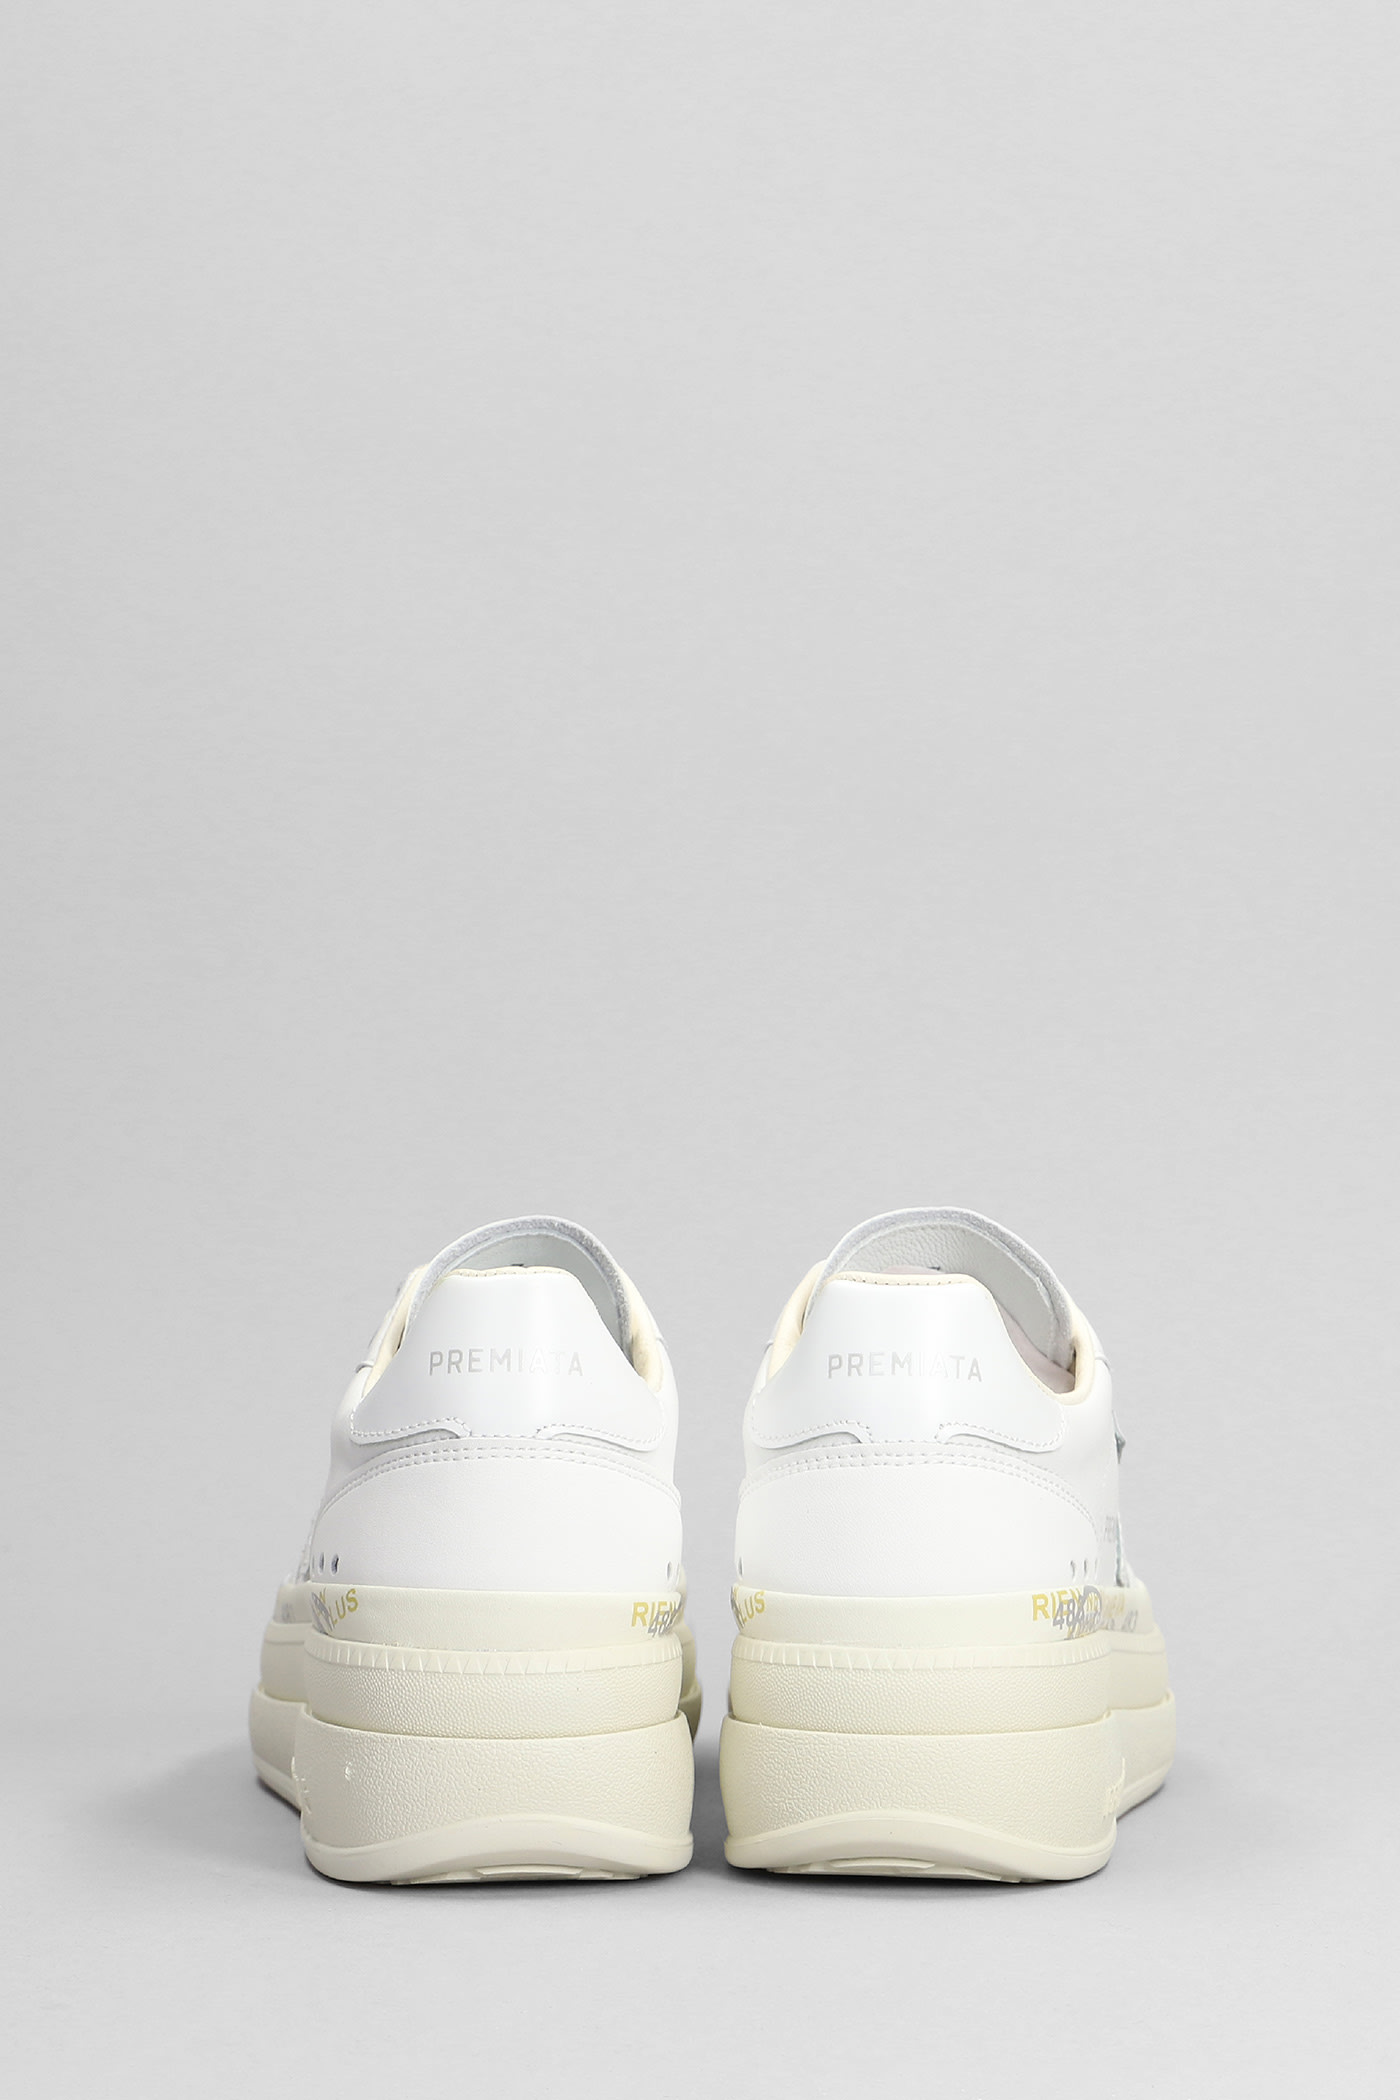 Shop Premiata Micol Sneakers In White Leather